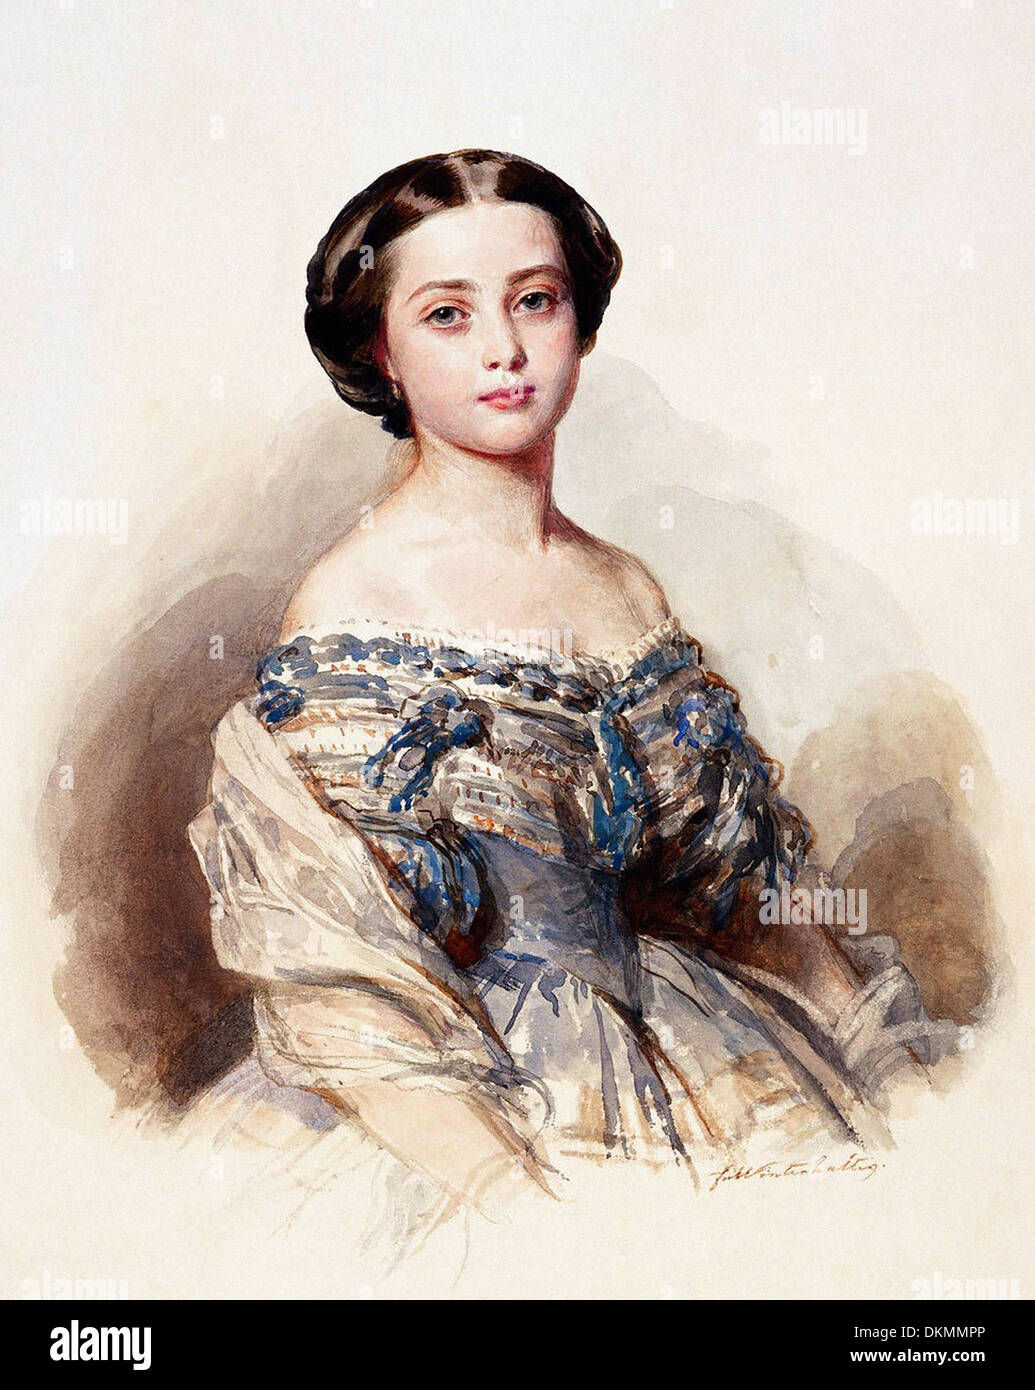 Anaëlle de Saint-Bris Franz-xaver-winterhalter-portrait-de-la-princesse-royale-victoria-1855-dkmmpp